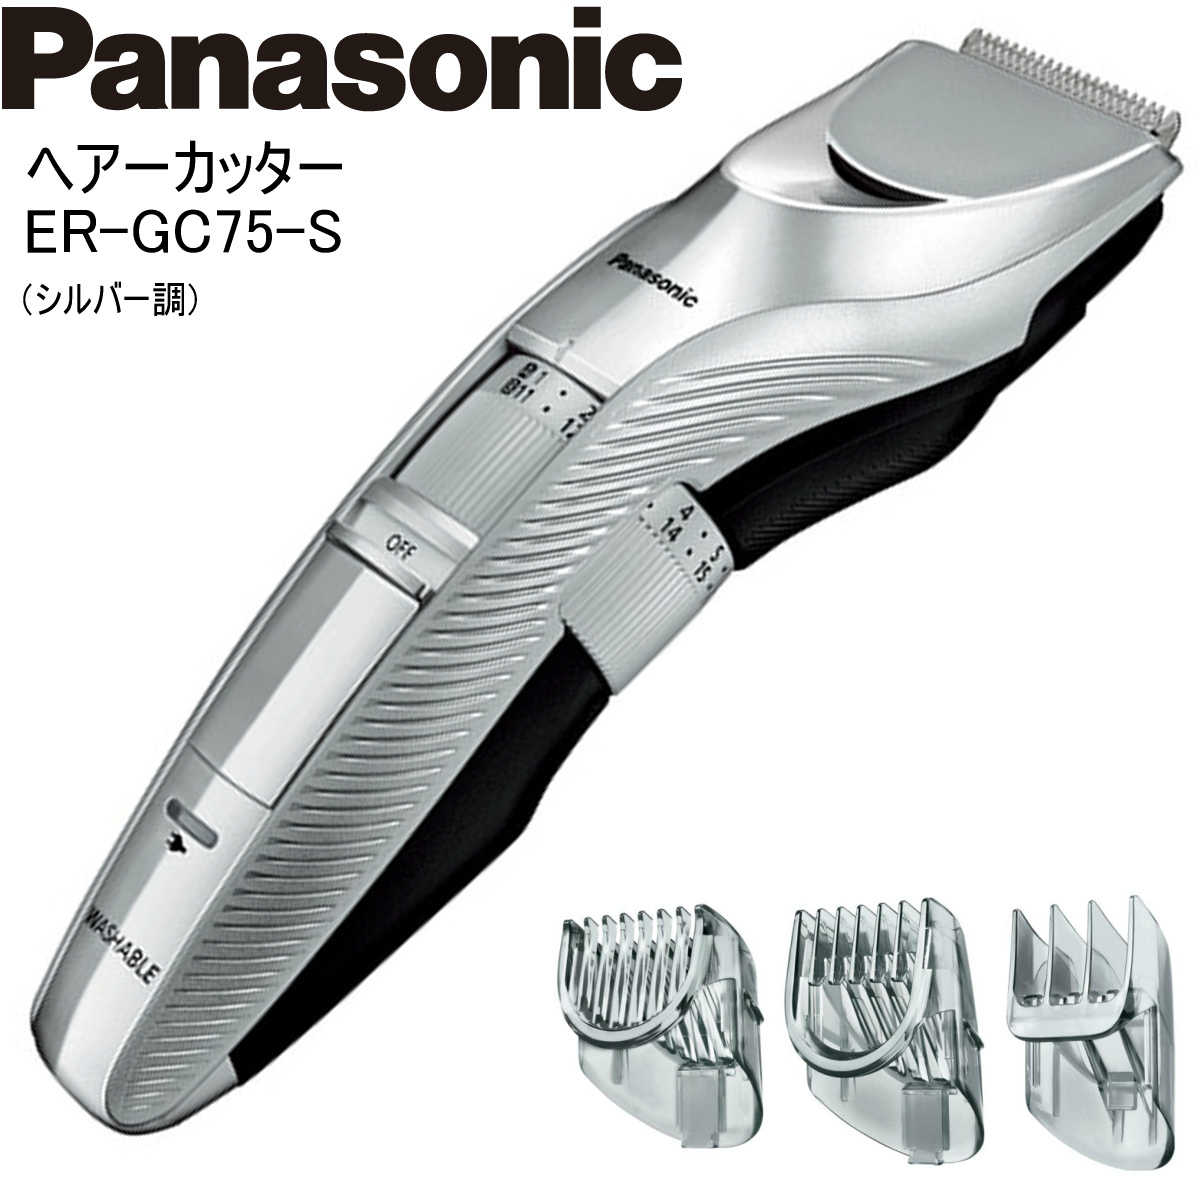 Panasonic パナソニック ヘアーカッター ER-GC75-S シルバー調 バリカン 充電・交流式 水洗い  :er-gc75-s:i-shopさくら !店 通販 